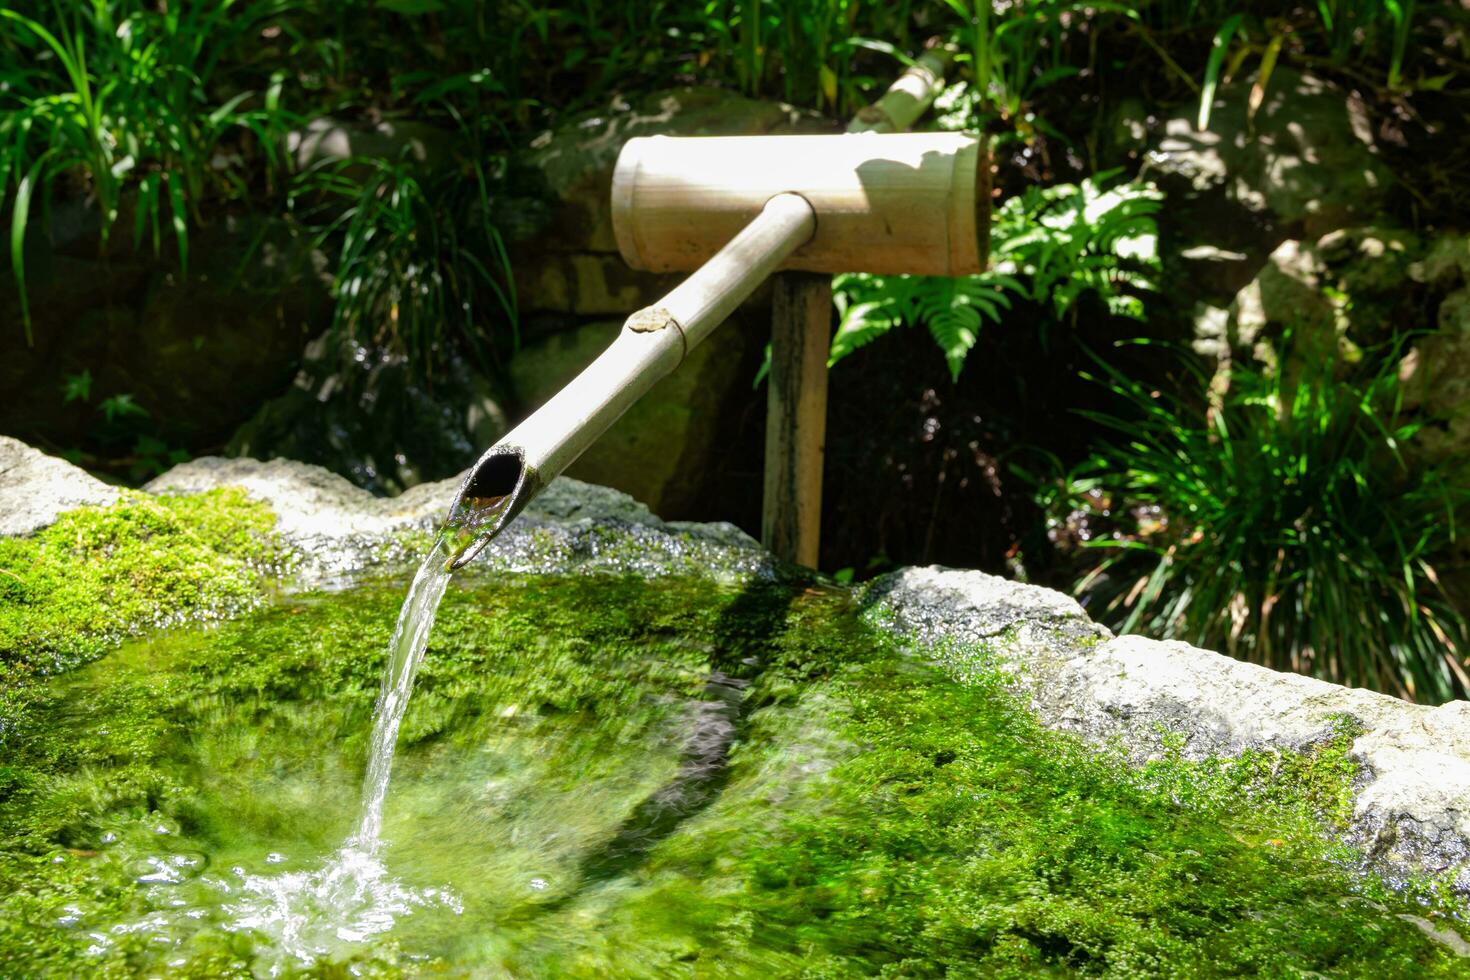 en japansk bambu vatten fontän shishi-odoshi i zen trädgård foto